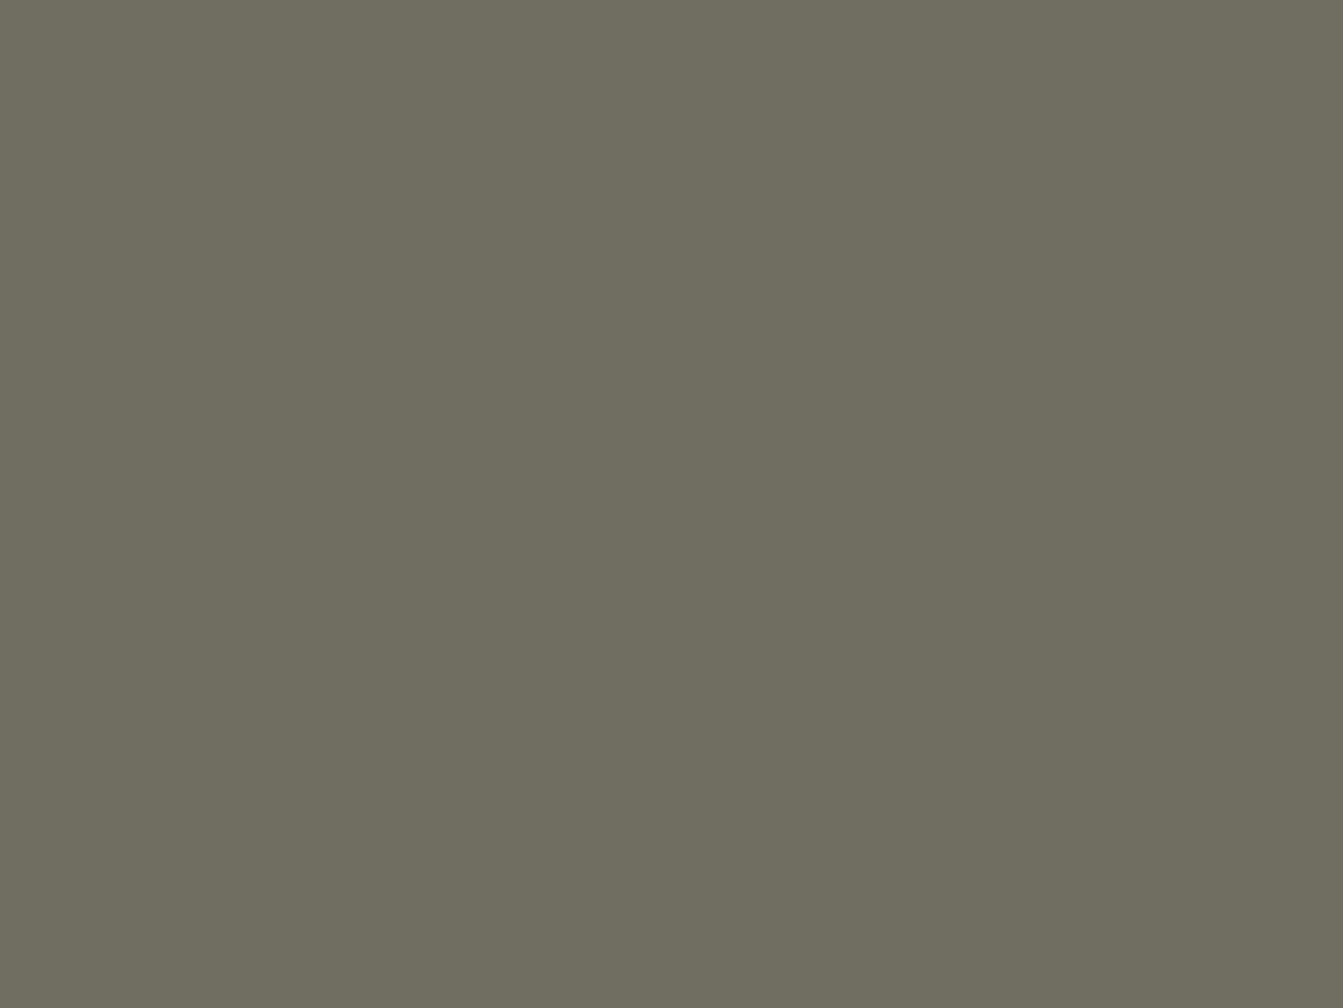 Ольга Розанова. Трефовый валет (фрагмент). 1916. Ивановский областной художественный музей, Иваново